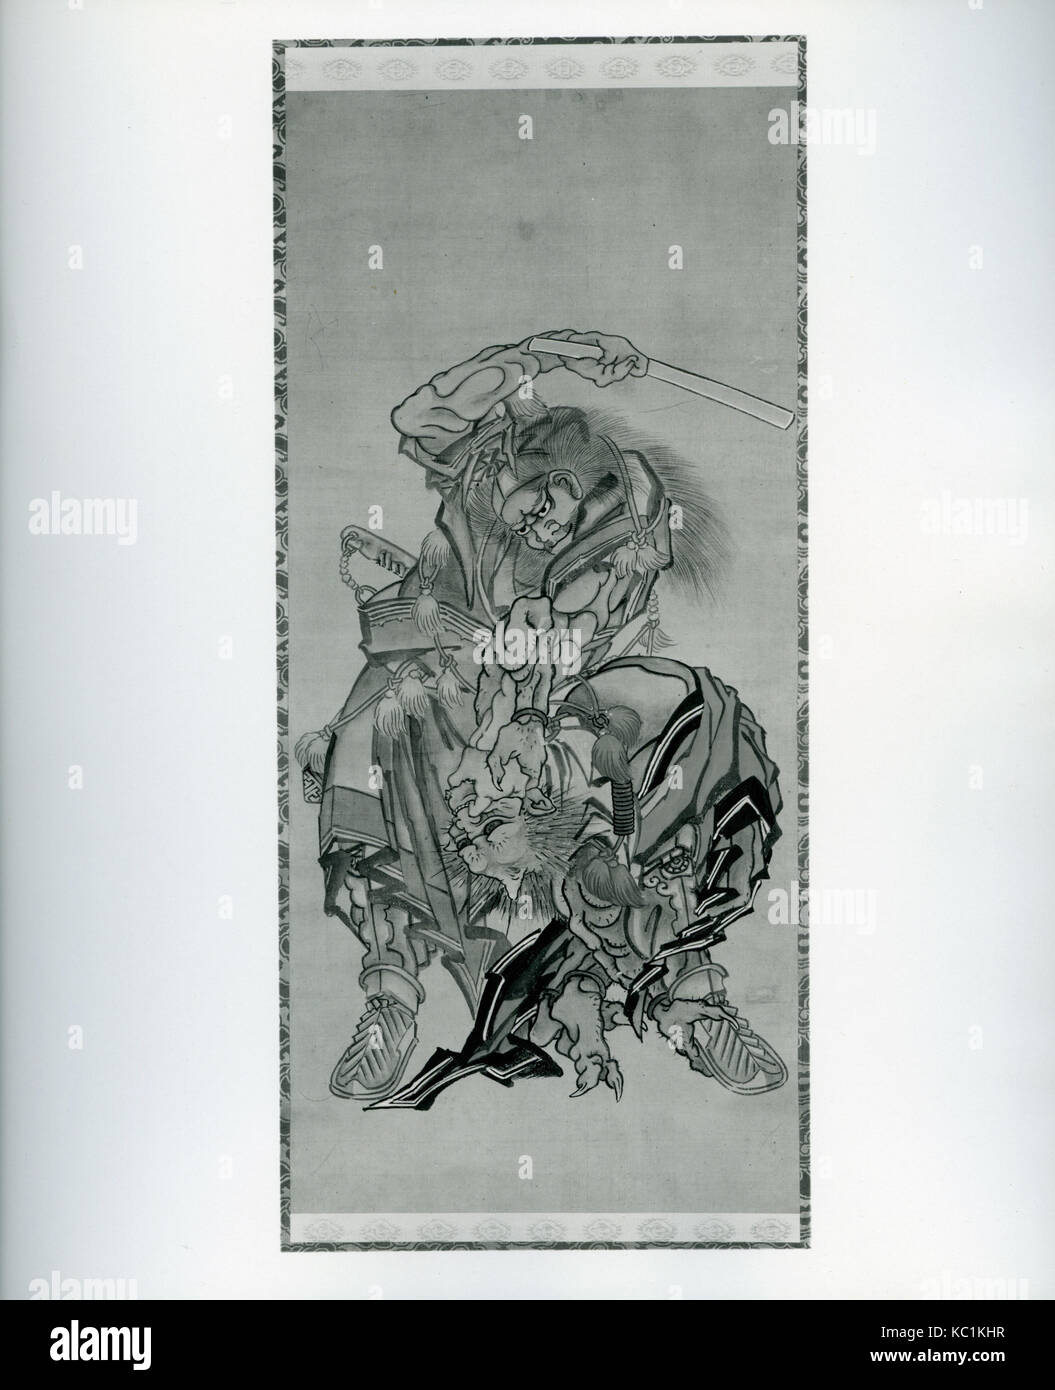 Shōki, le démon Queller, Katsushika Hokusai, daté 1790 Banque D'Images